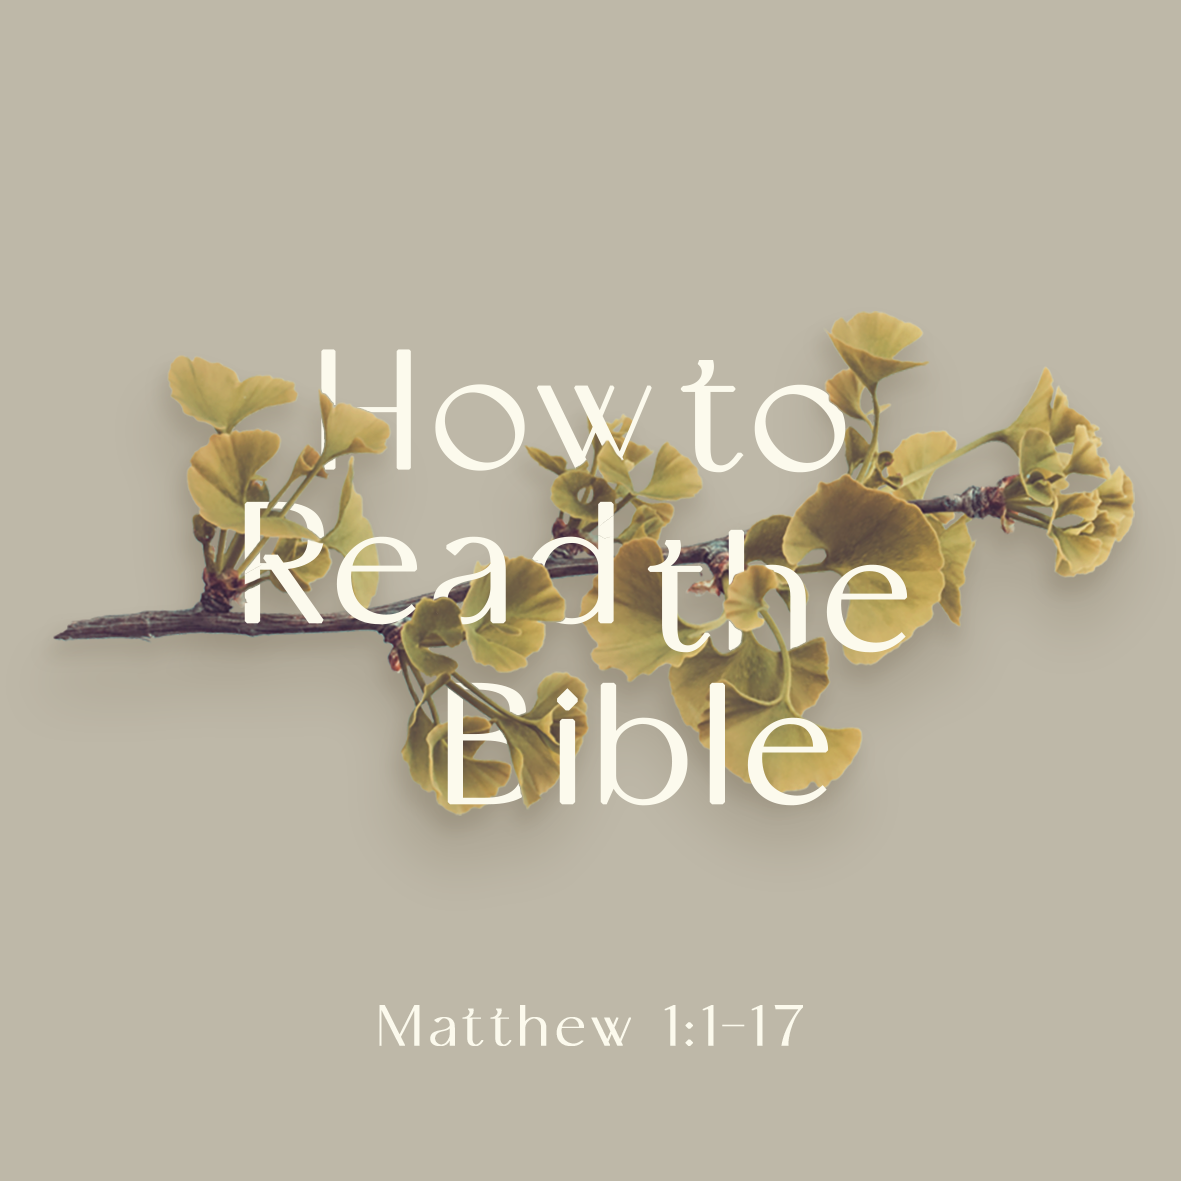 How to Read the Bible (Matt 1:1-17)